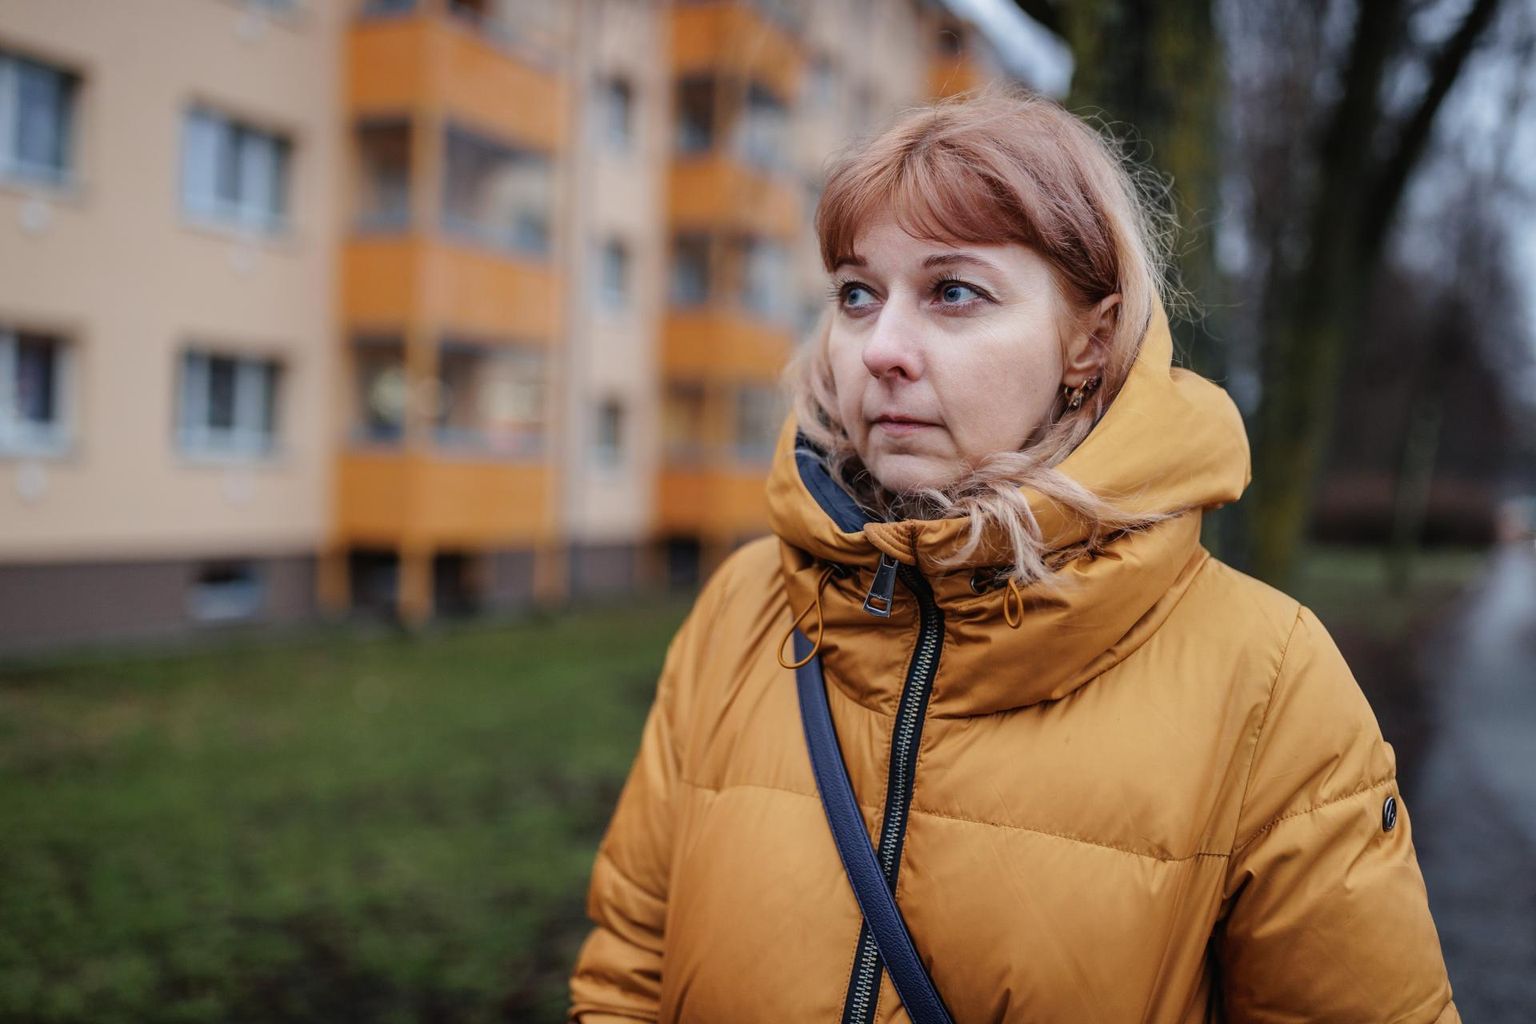 По словам Тетяны Коновальчук, украинцы в Эстонии очень терпеливы, они стараются забыть услышанные оскорбления и двигаться дальше.